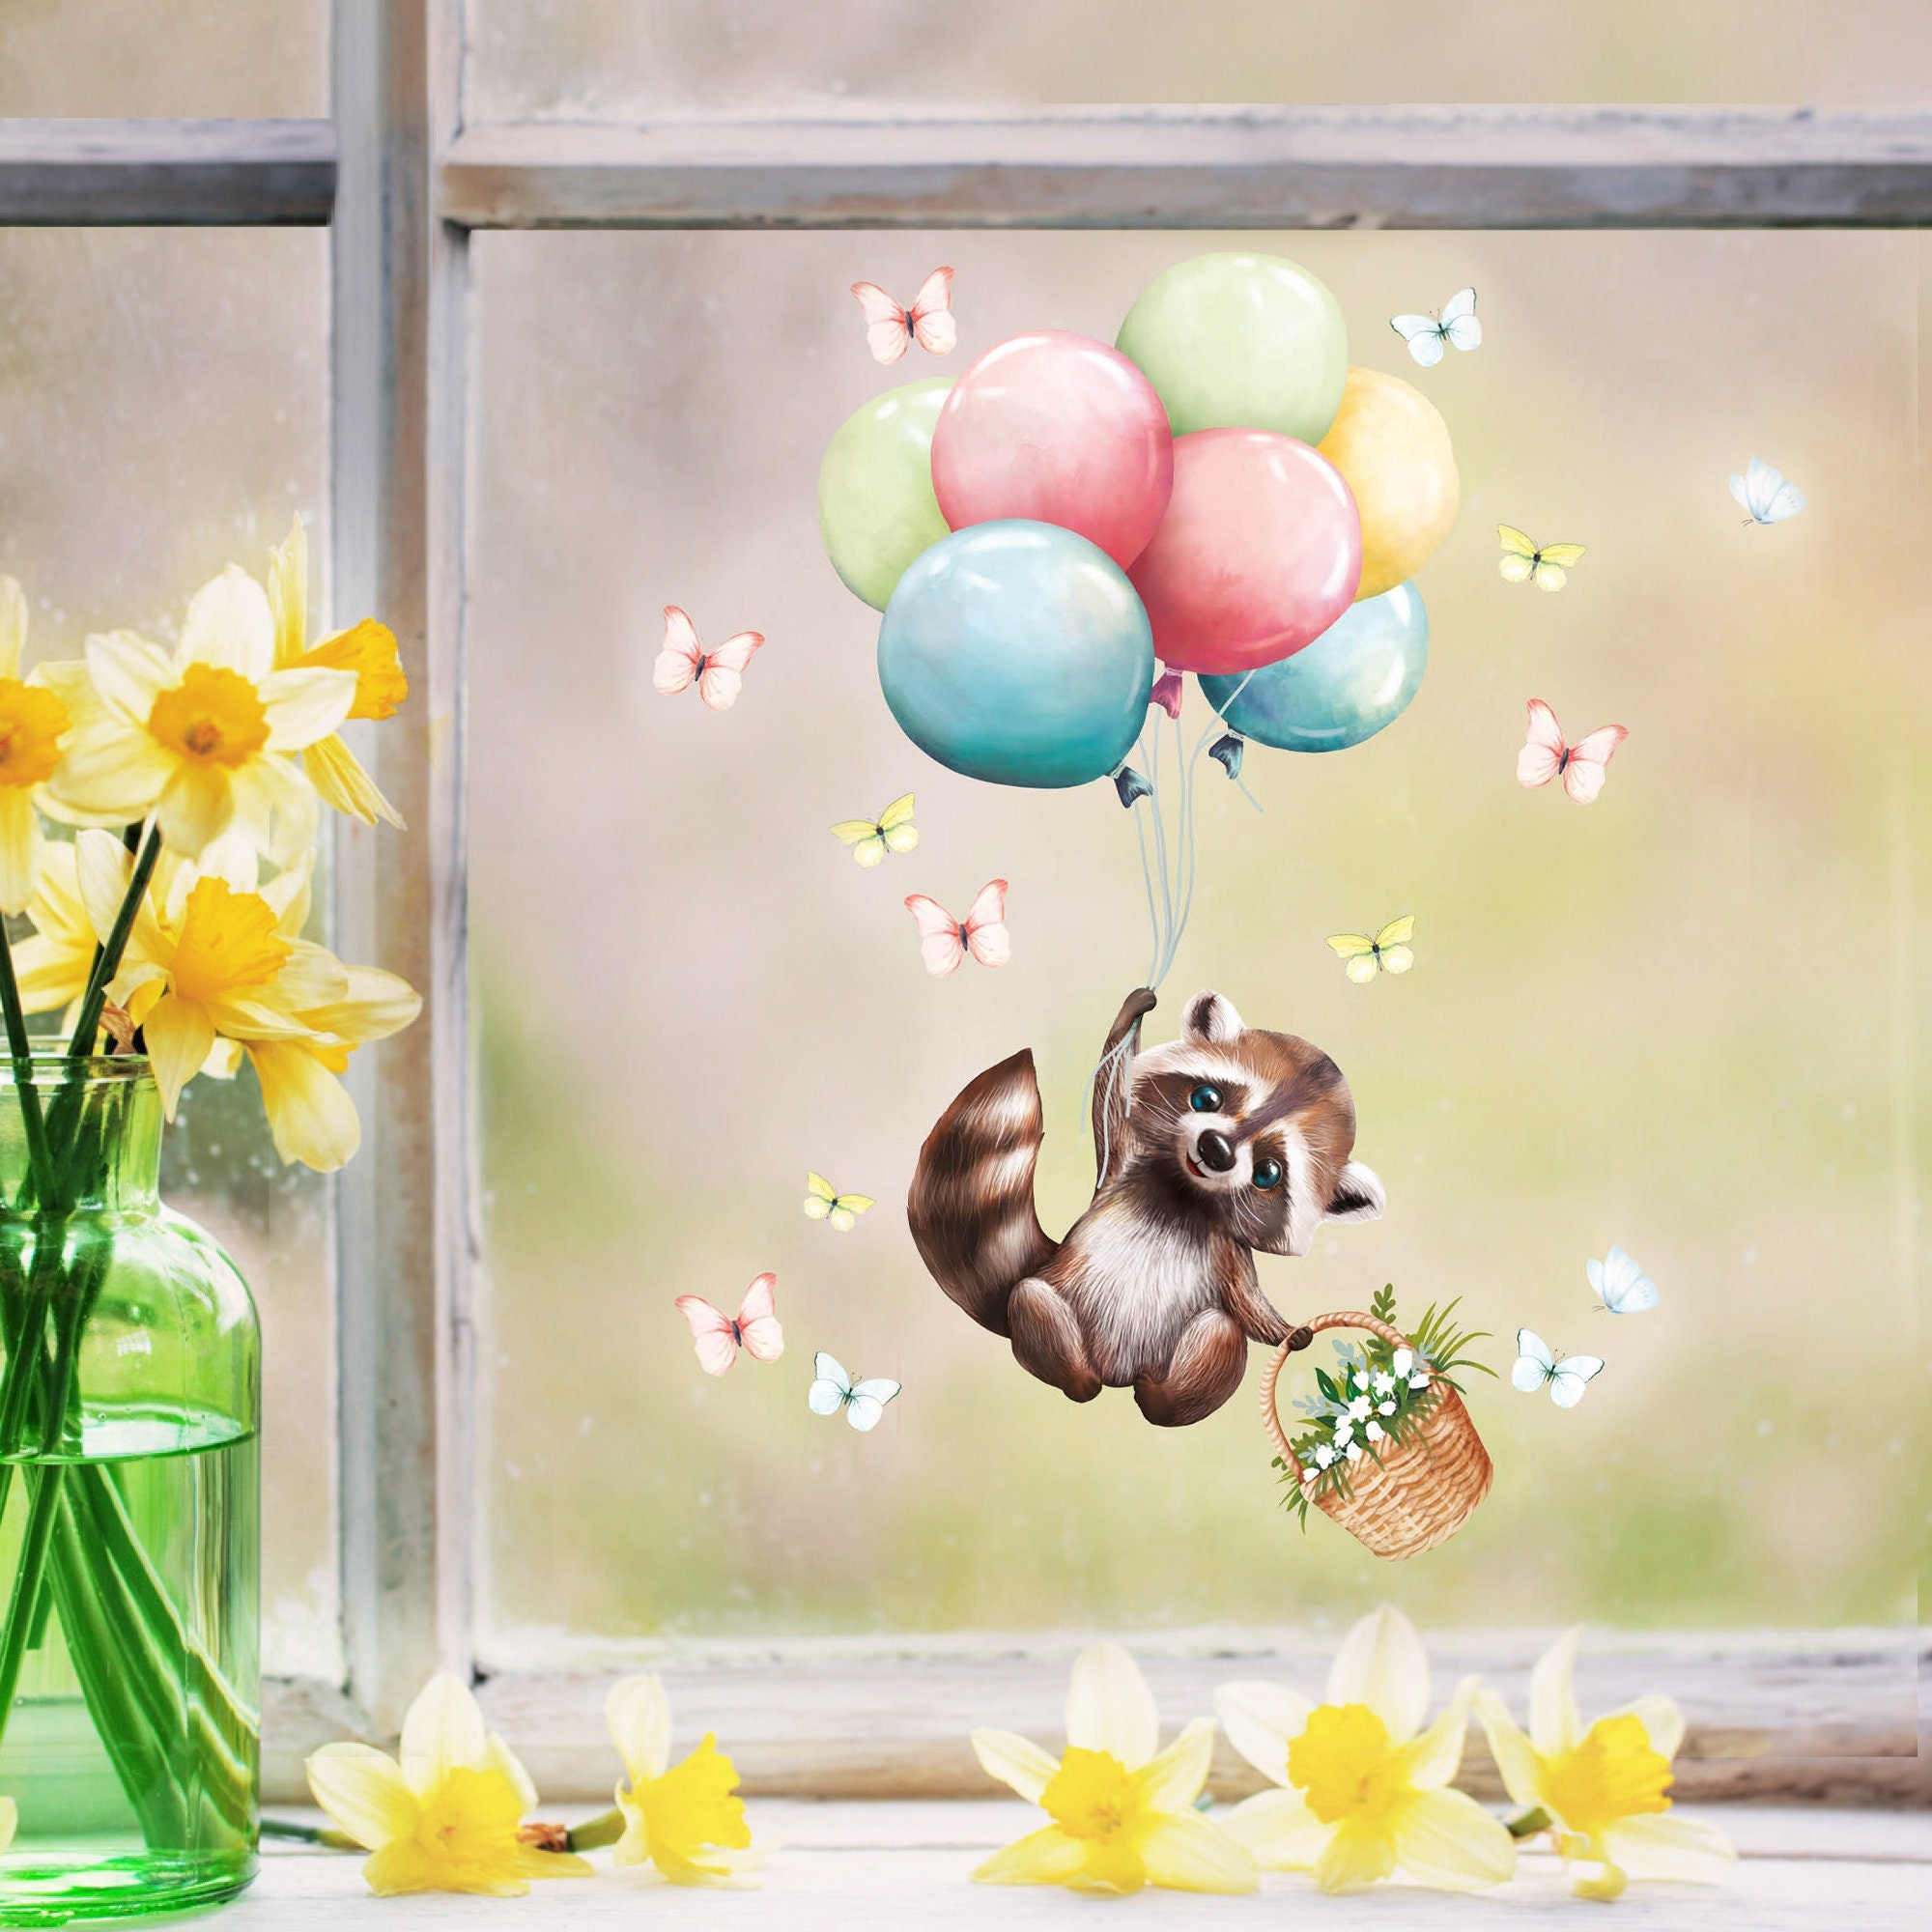 Fensterbild Frühling Ostern Waschbär Luftballons Schmetterlinge Fensterdeko Kinderzimmer Kind, Frühlingsdeko, Osterdeko